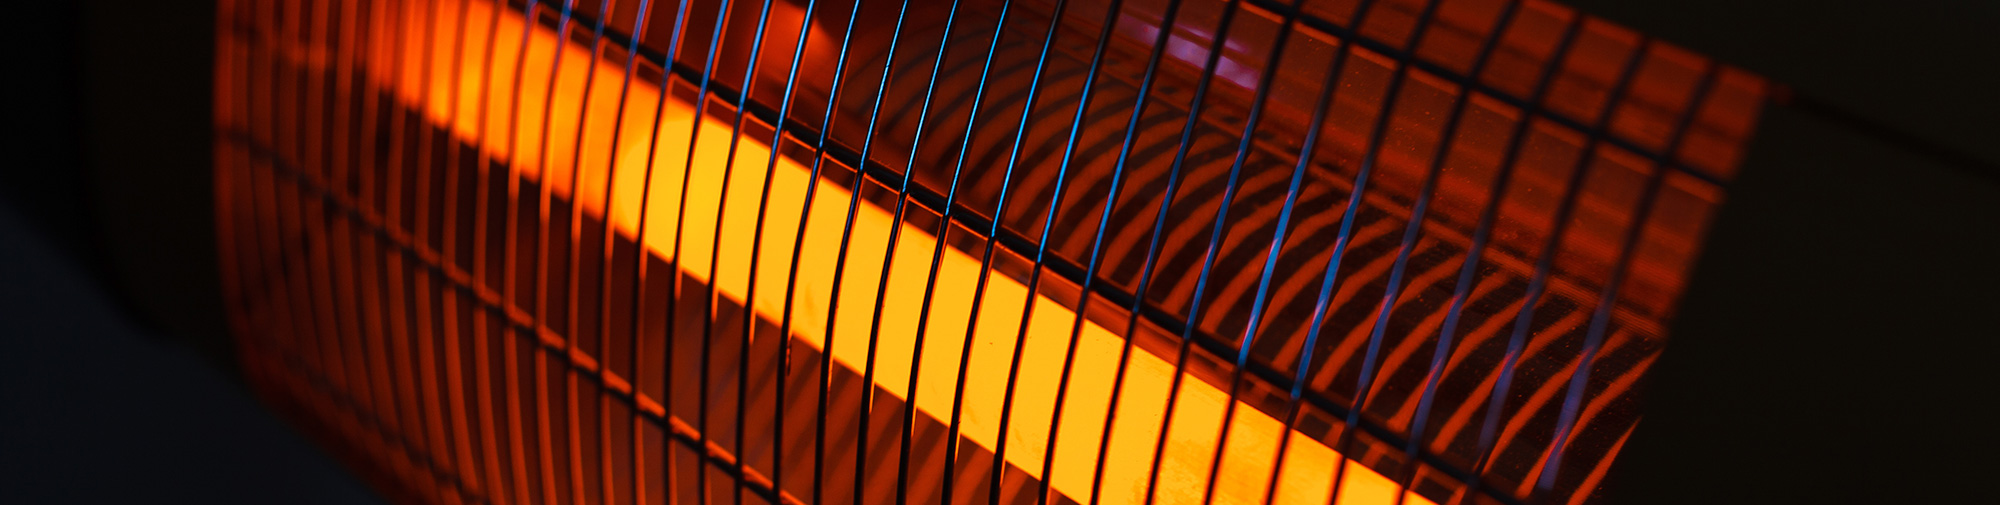 Chauffage infrarouge : radiateur avec avantages et inconvénients